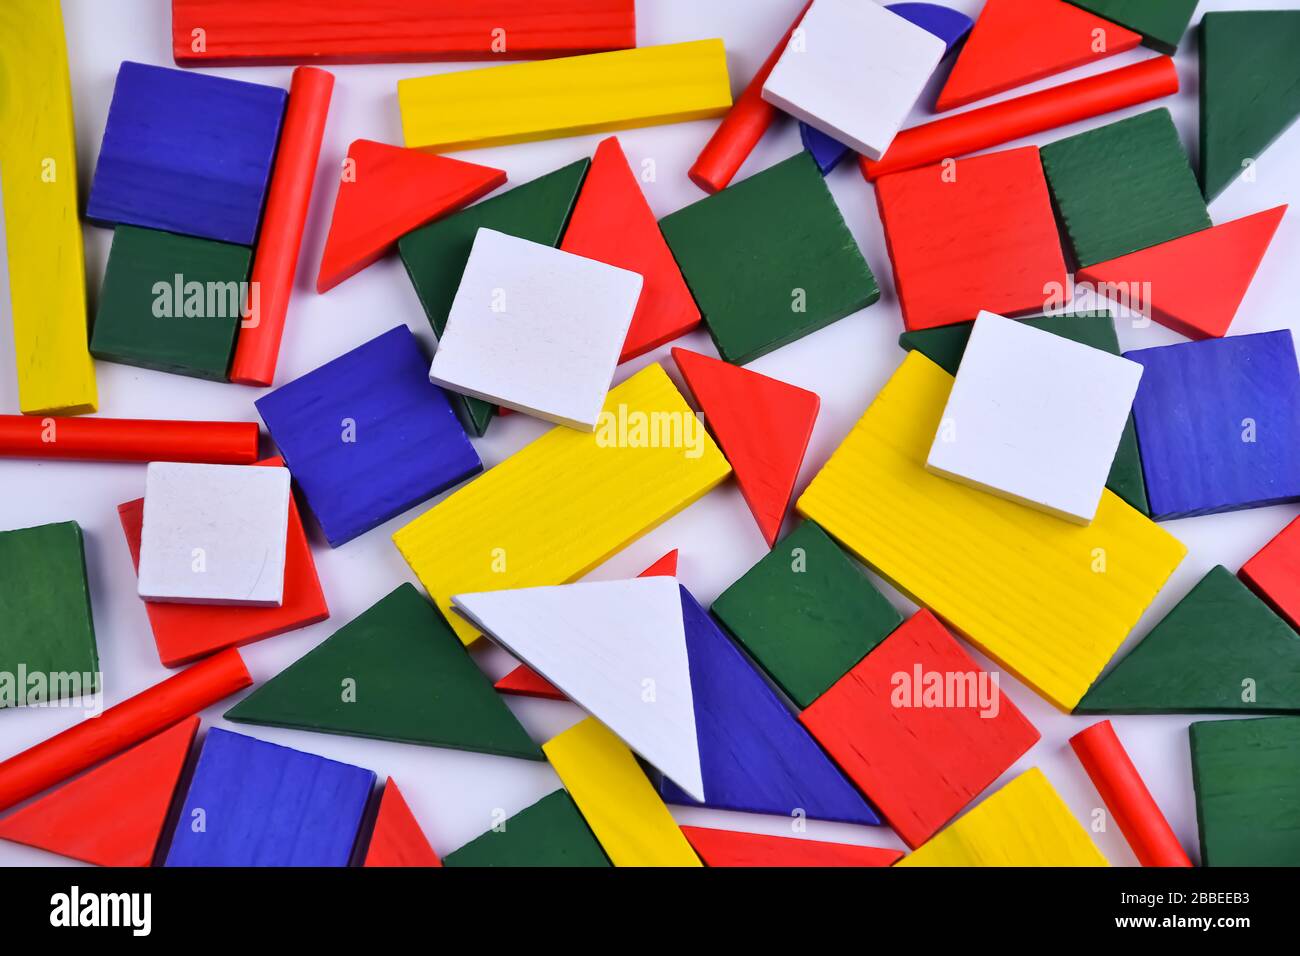 Arrière-plan multicolore de petites figures géométriques de différentes couleurs vives Banque D'Images